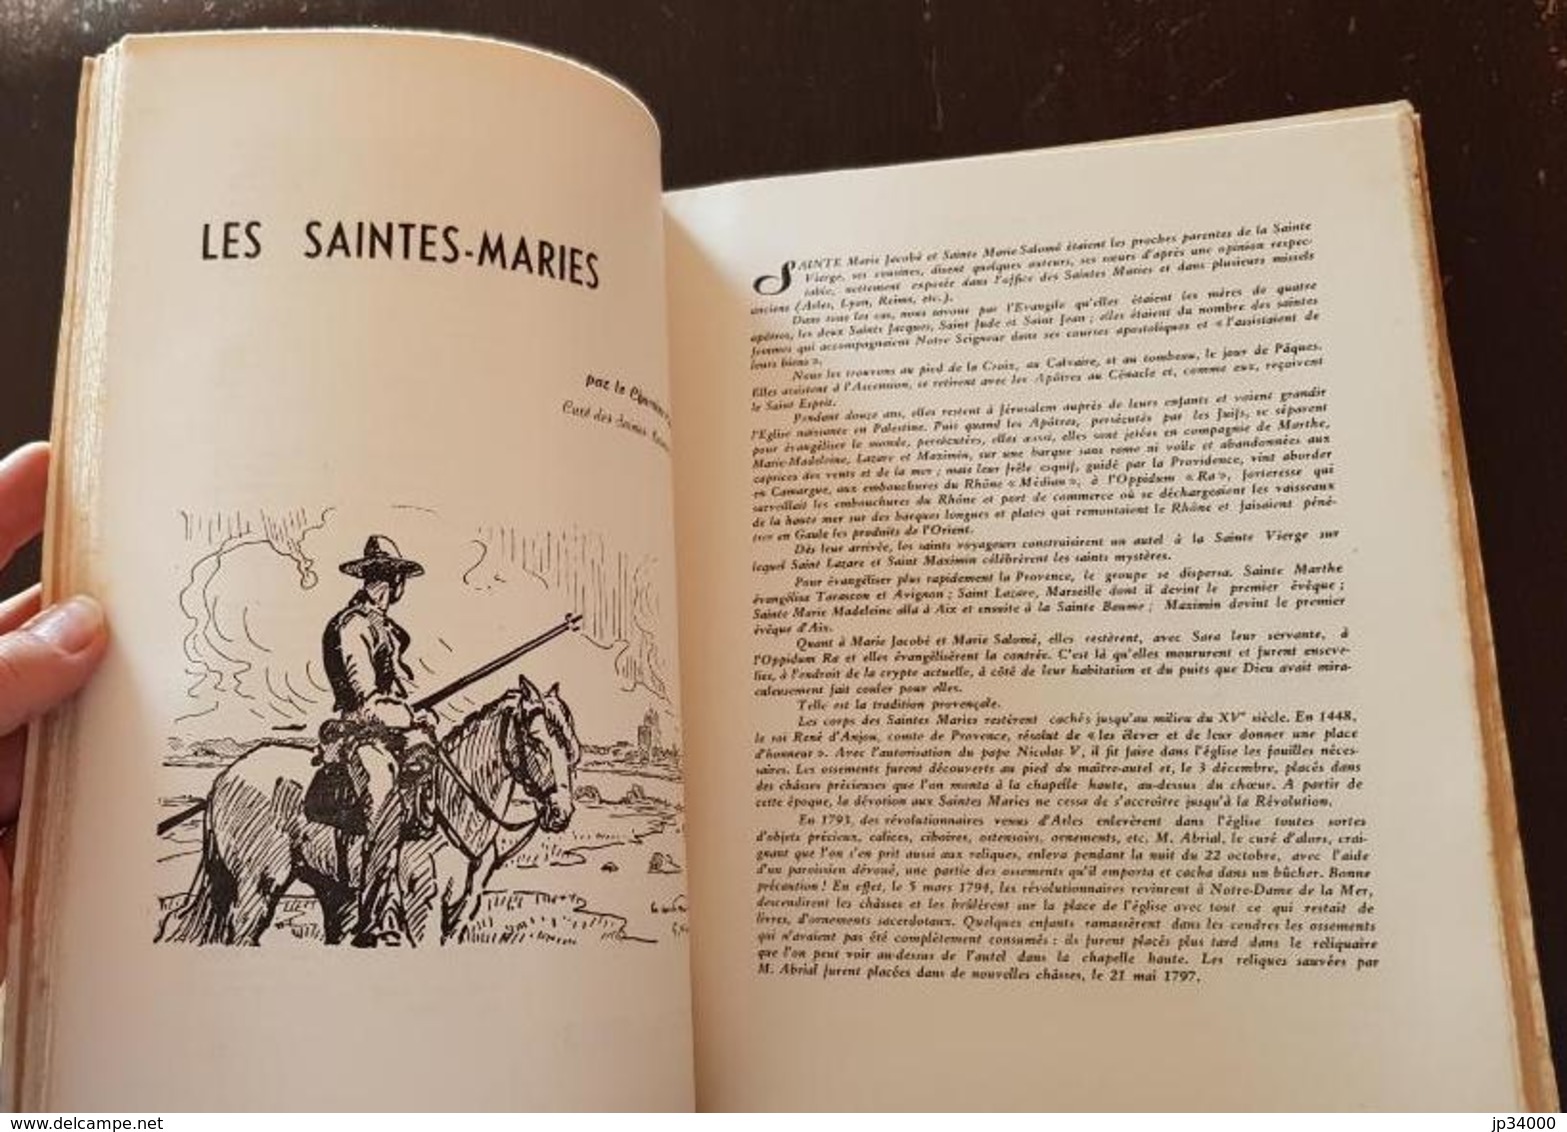 SOLEIL DE FRANCE sur notre Rhone 1943 Académie des Poetes. (régionalisme Languedoc)